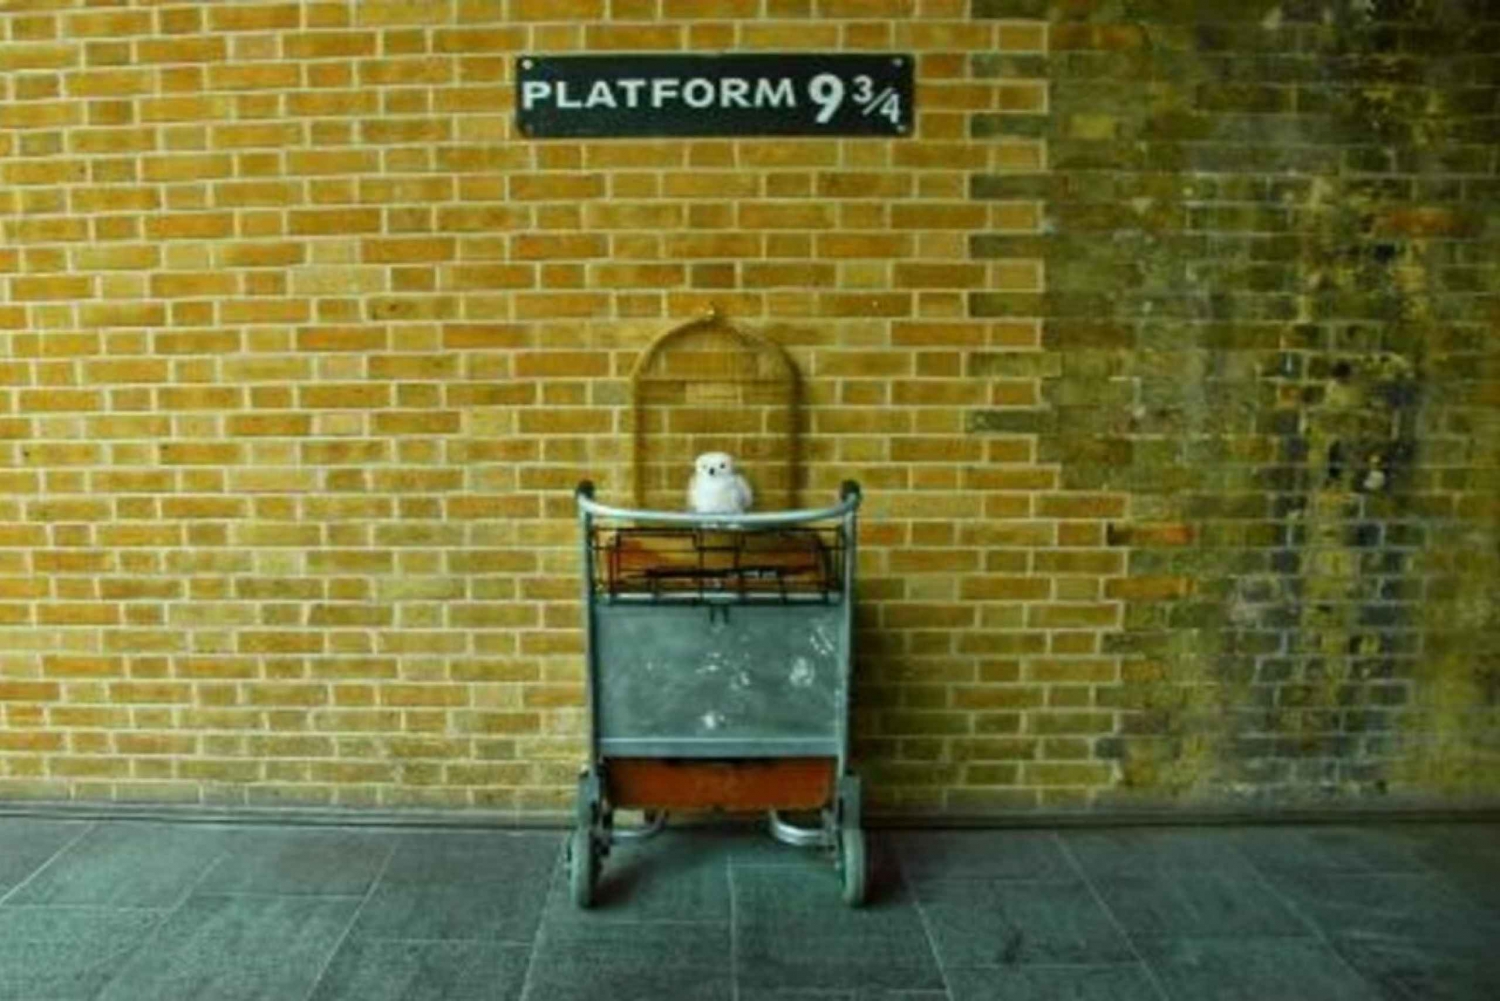 Londres : visite guidée de Harry Potter, croisière fluviale et donjon de Londres